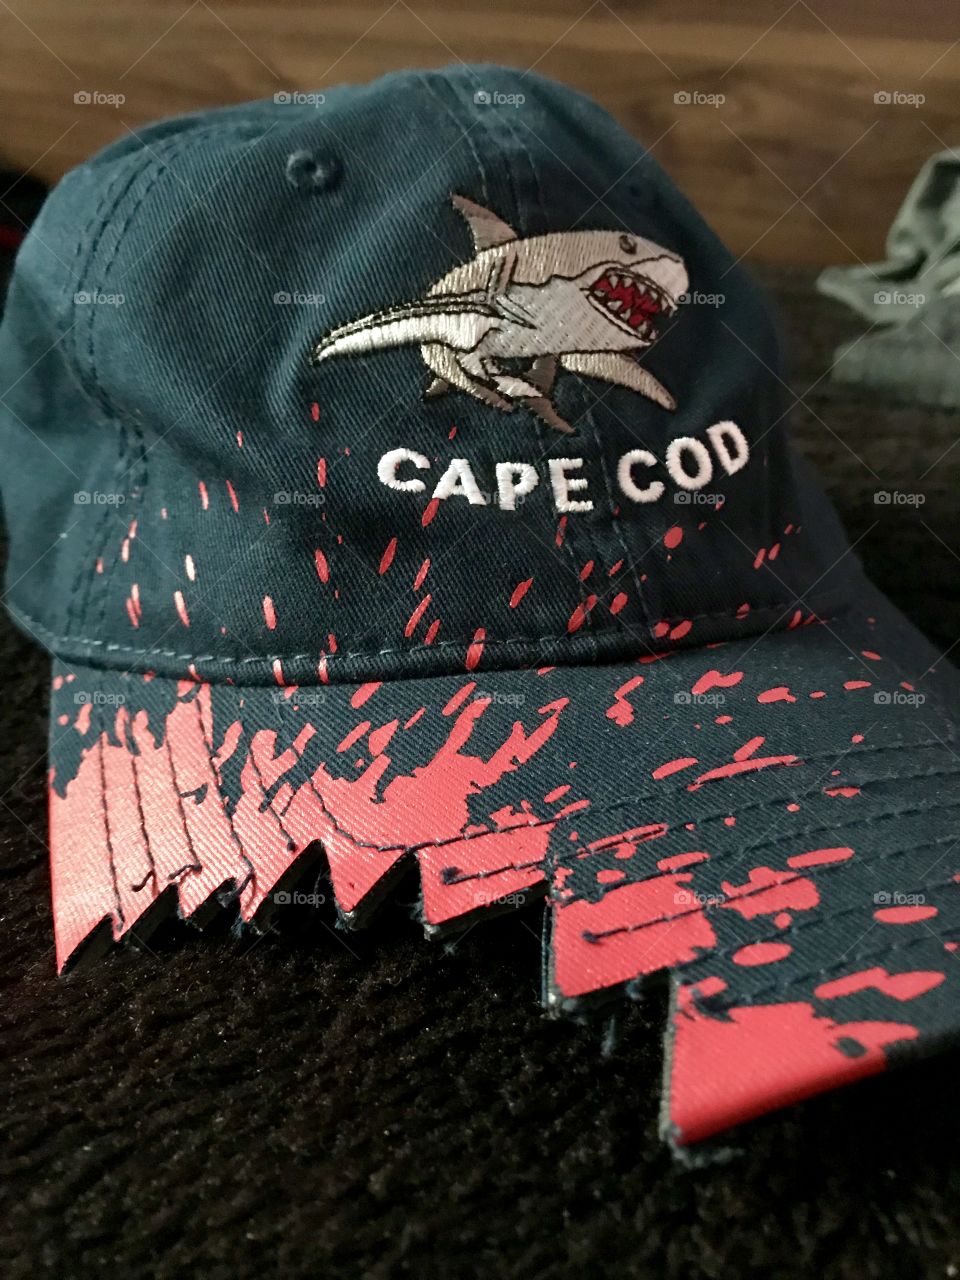 Cape Cod hat.